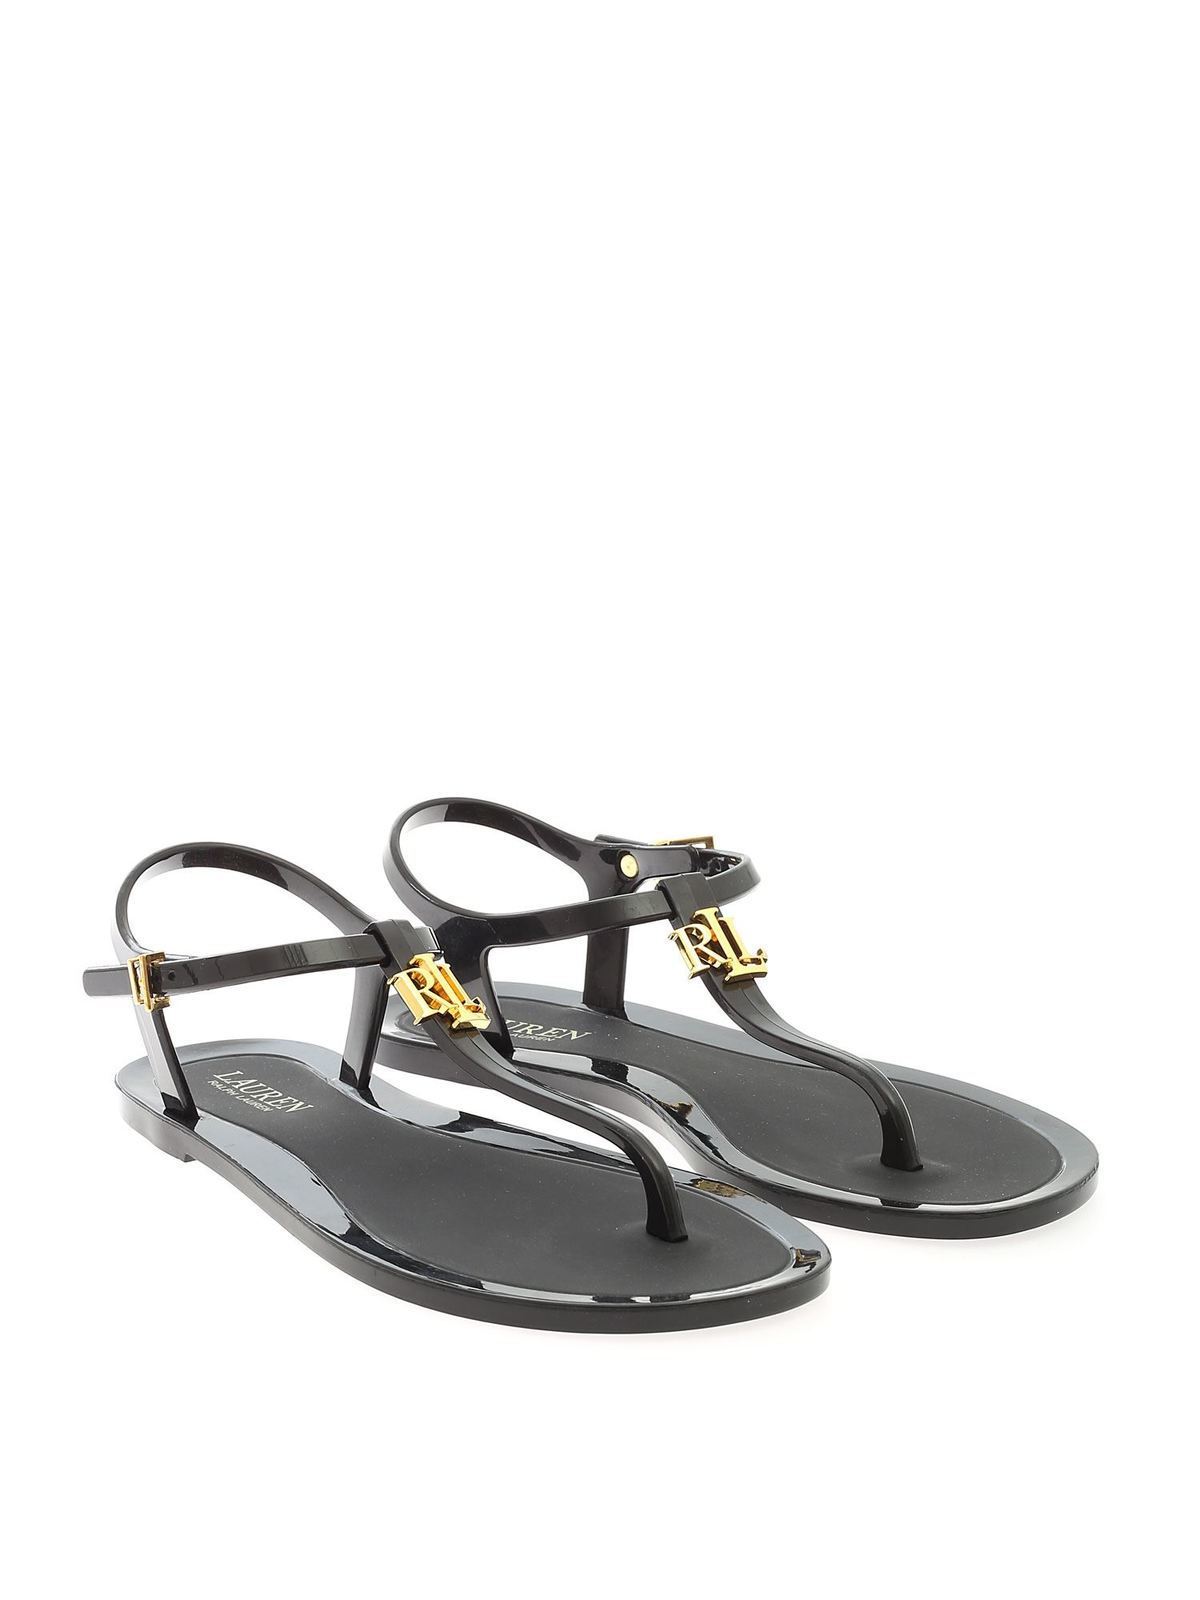 Sandals Lauren Ralph Lauren - Thong sandals in black - 802784684001